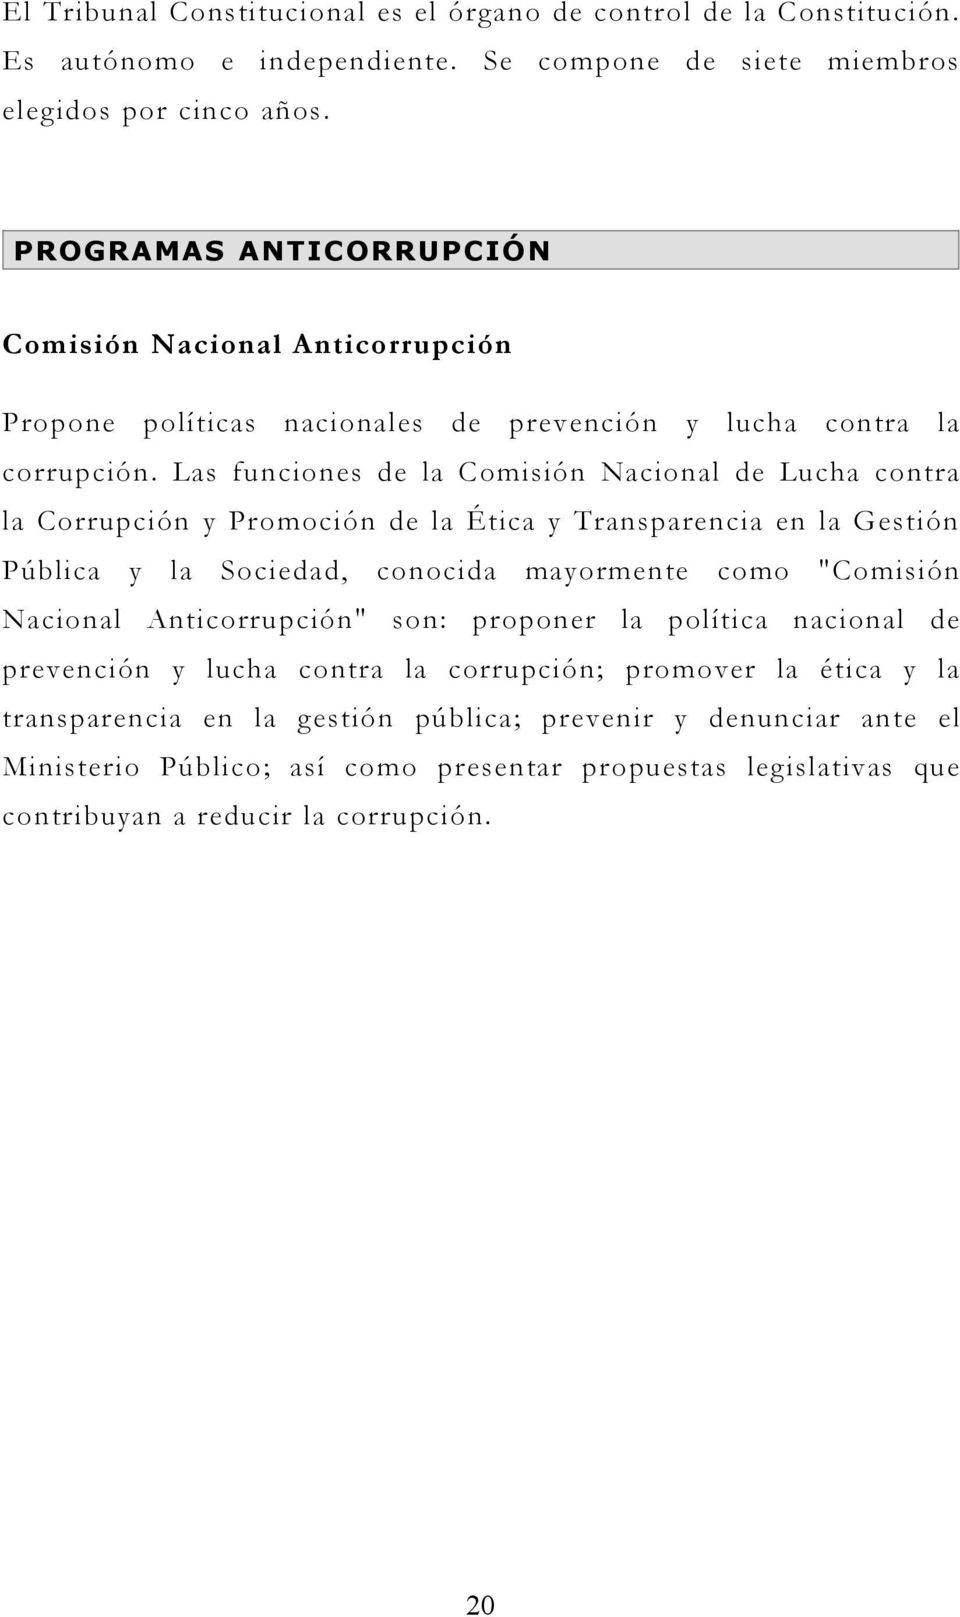 Las funciones de la Comisión Nacional de Lucha contra la Corrupción y Promoción de la Ética y Transparencia en la Gestión Pública y la Sociedad, conocida mayormente como "Comisión Nacional